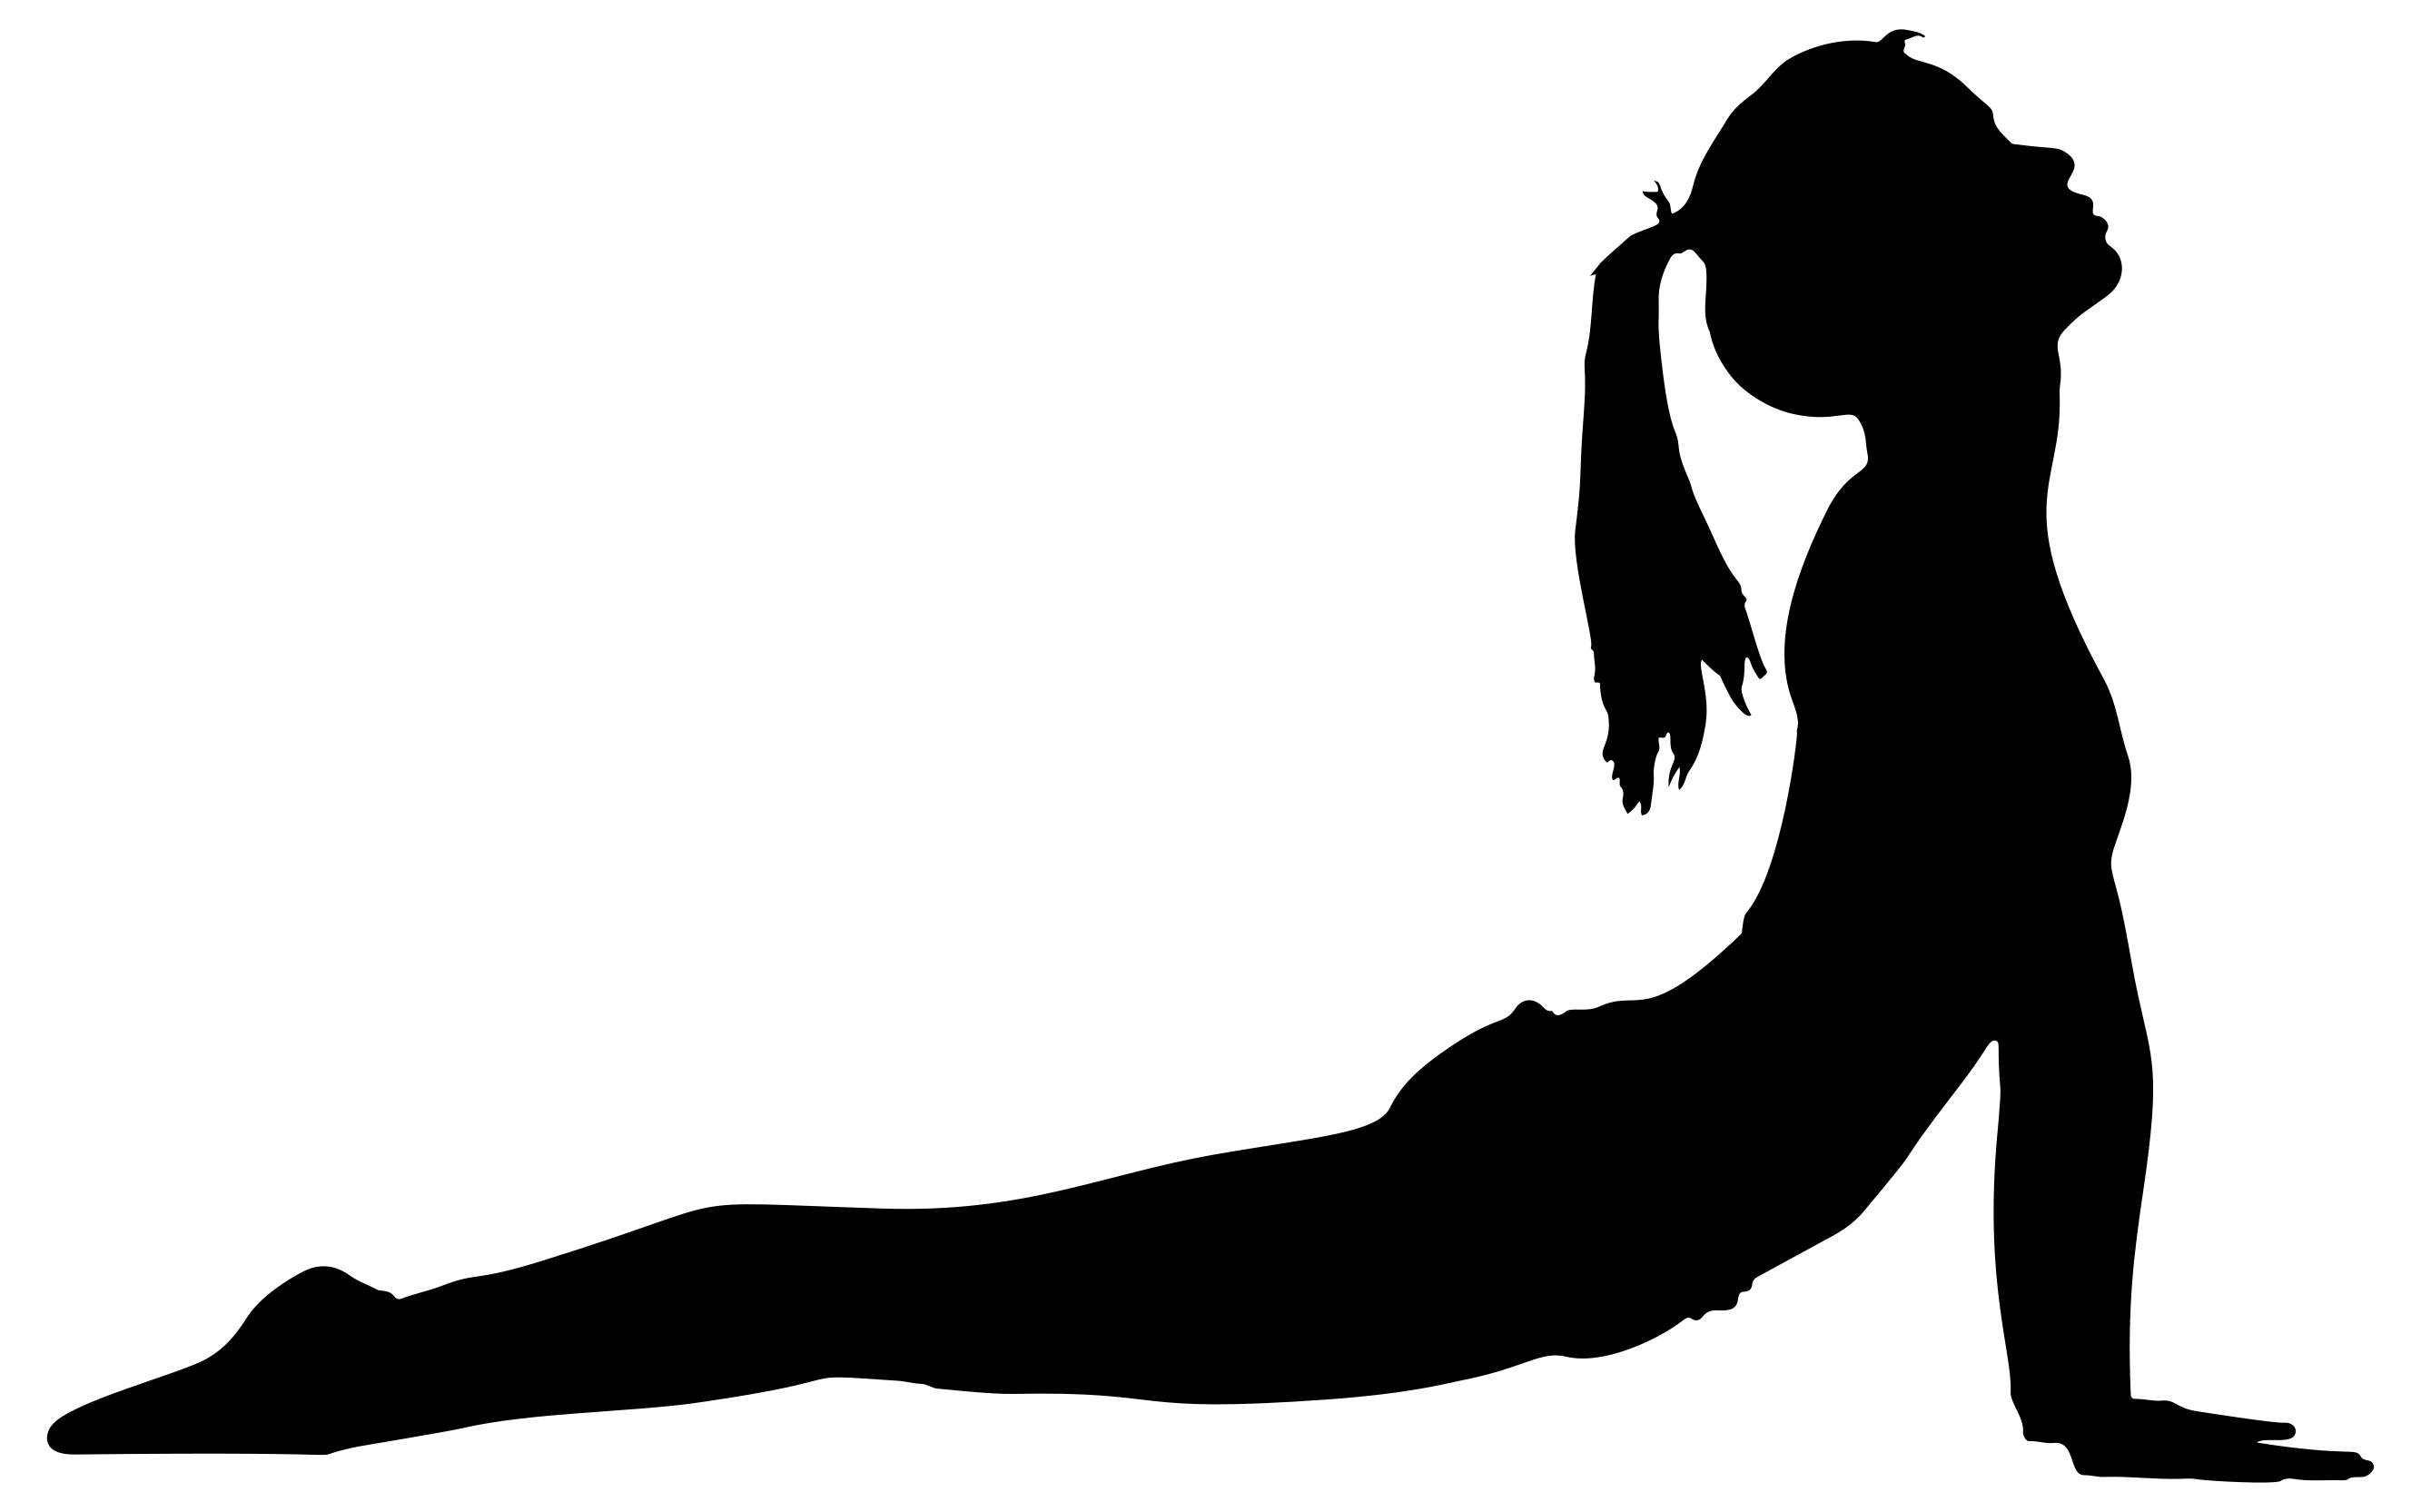 Female Yoga Pose Silhouette 26 Clipart - Design Droide